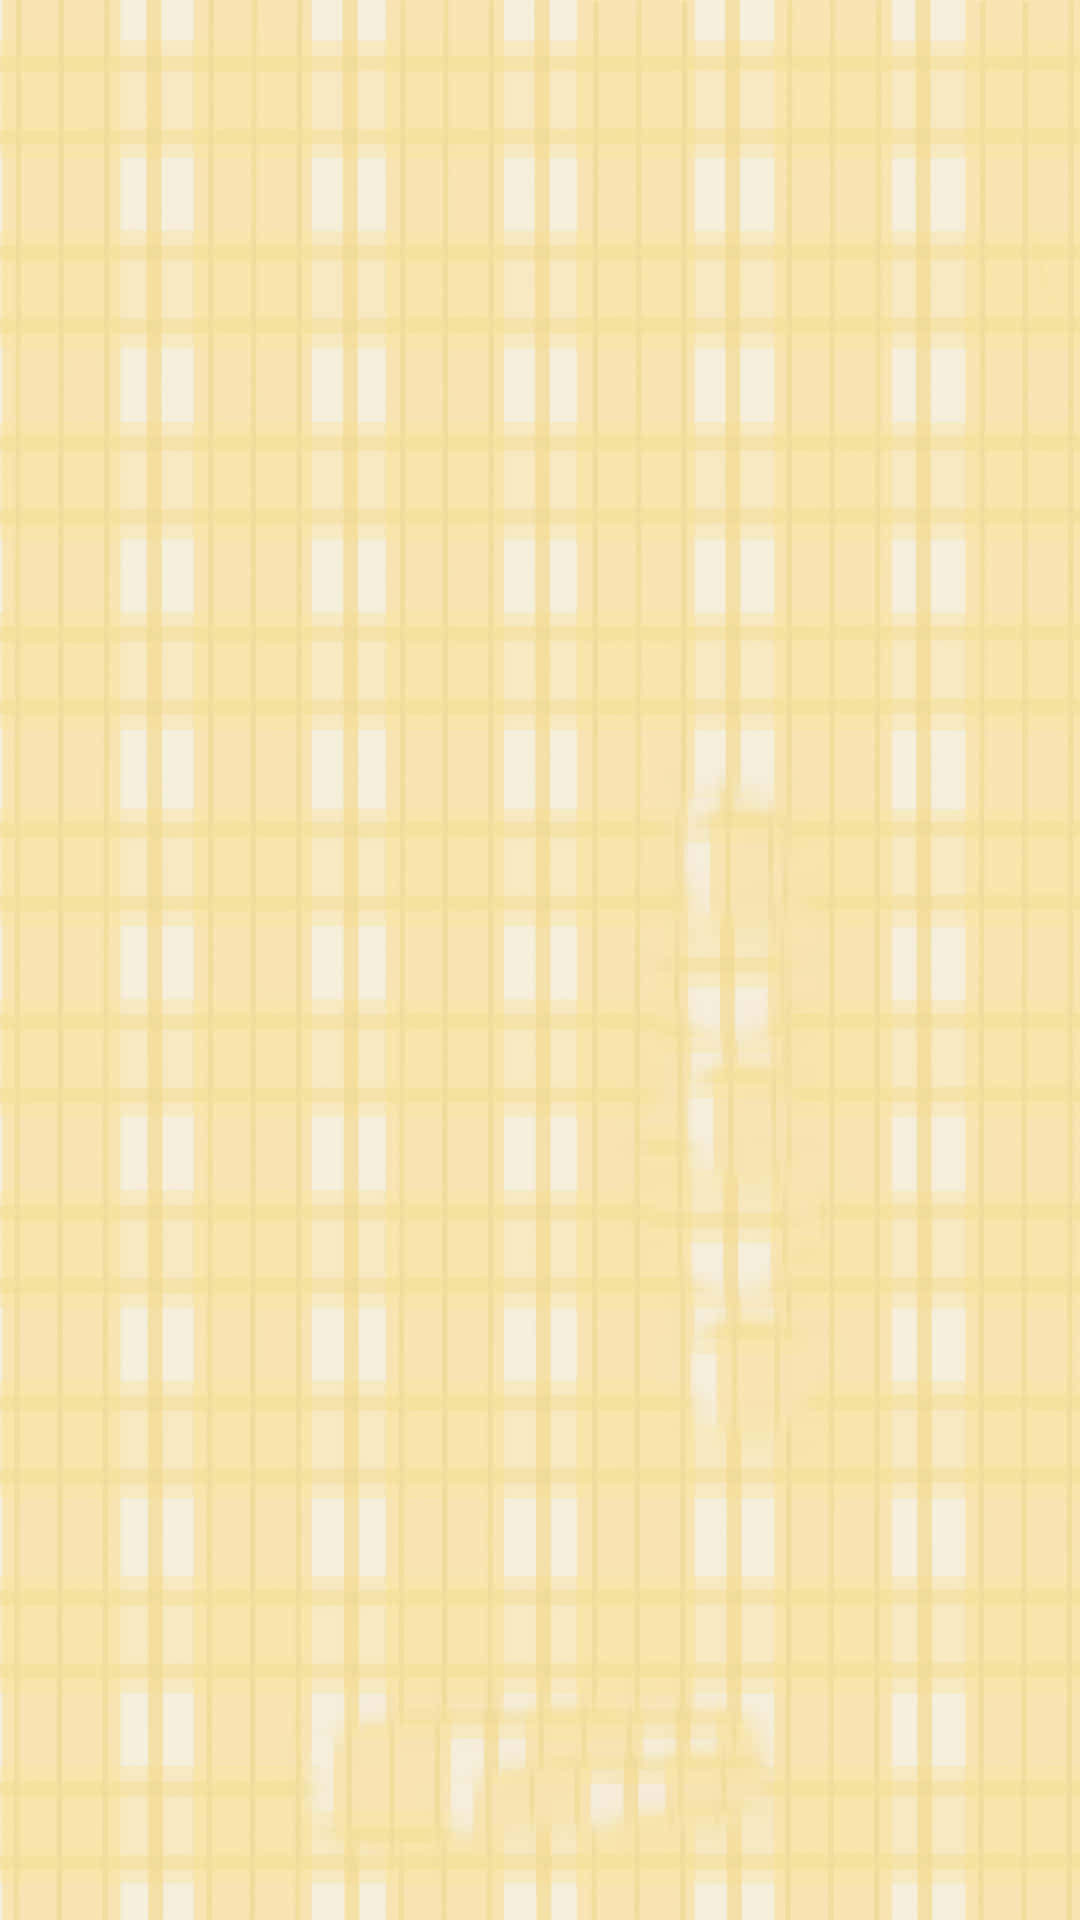 Umpapel De Parede Quadriculado Amarelo E Branco. Papel de Parede